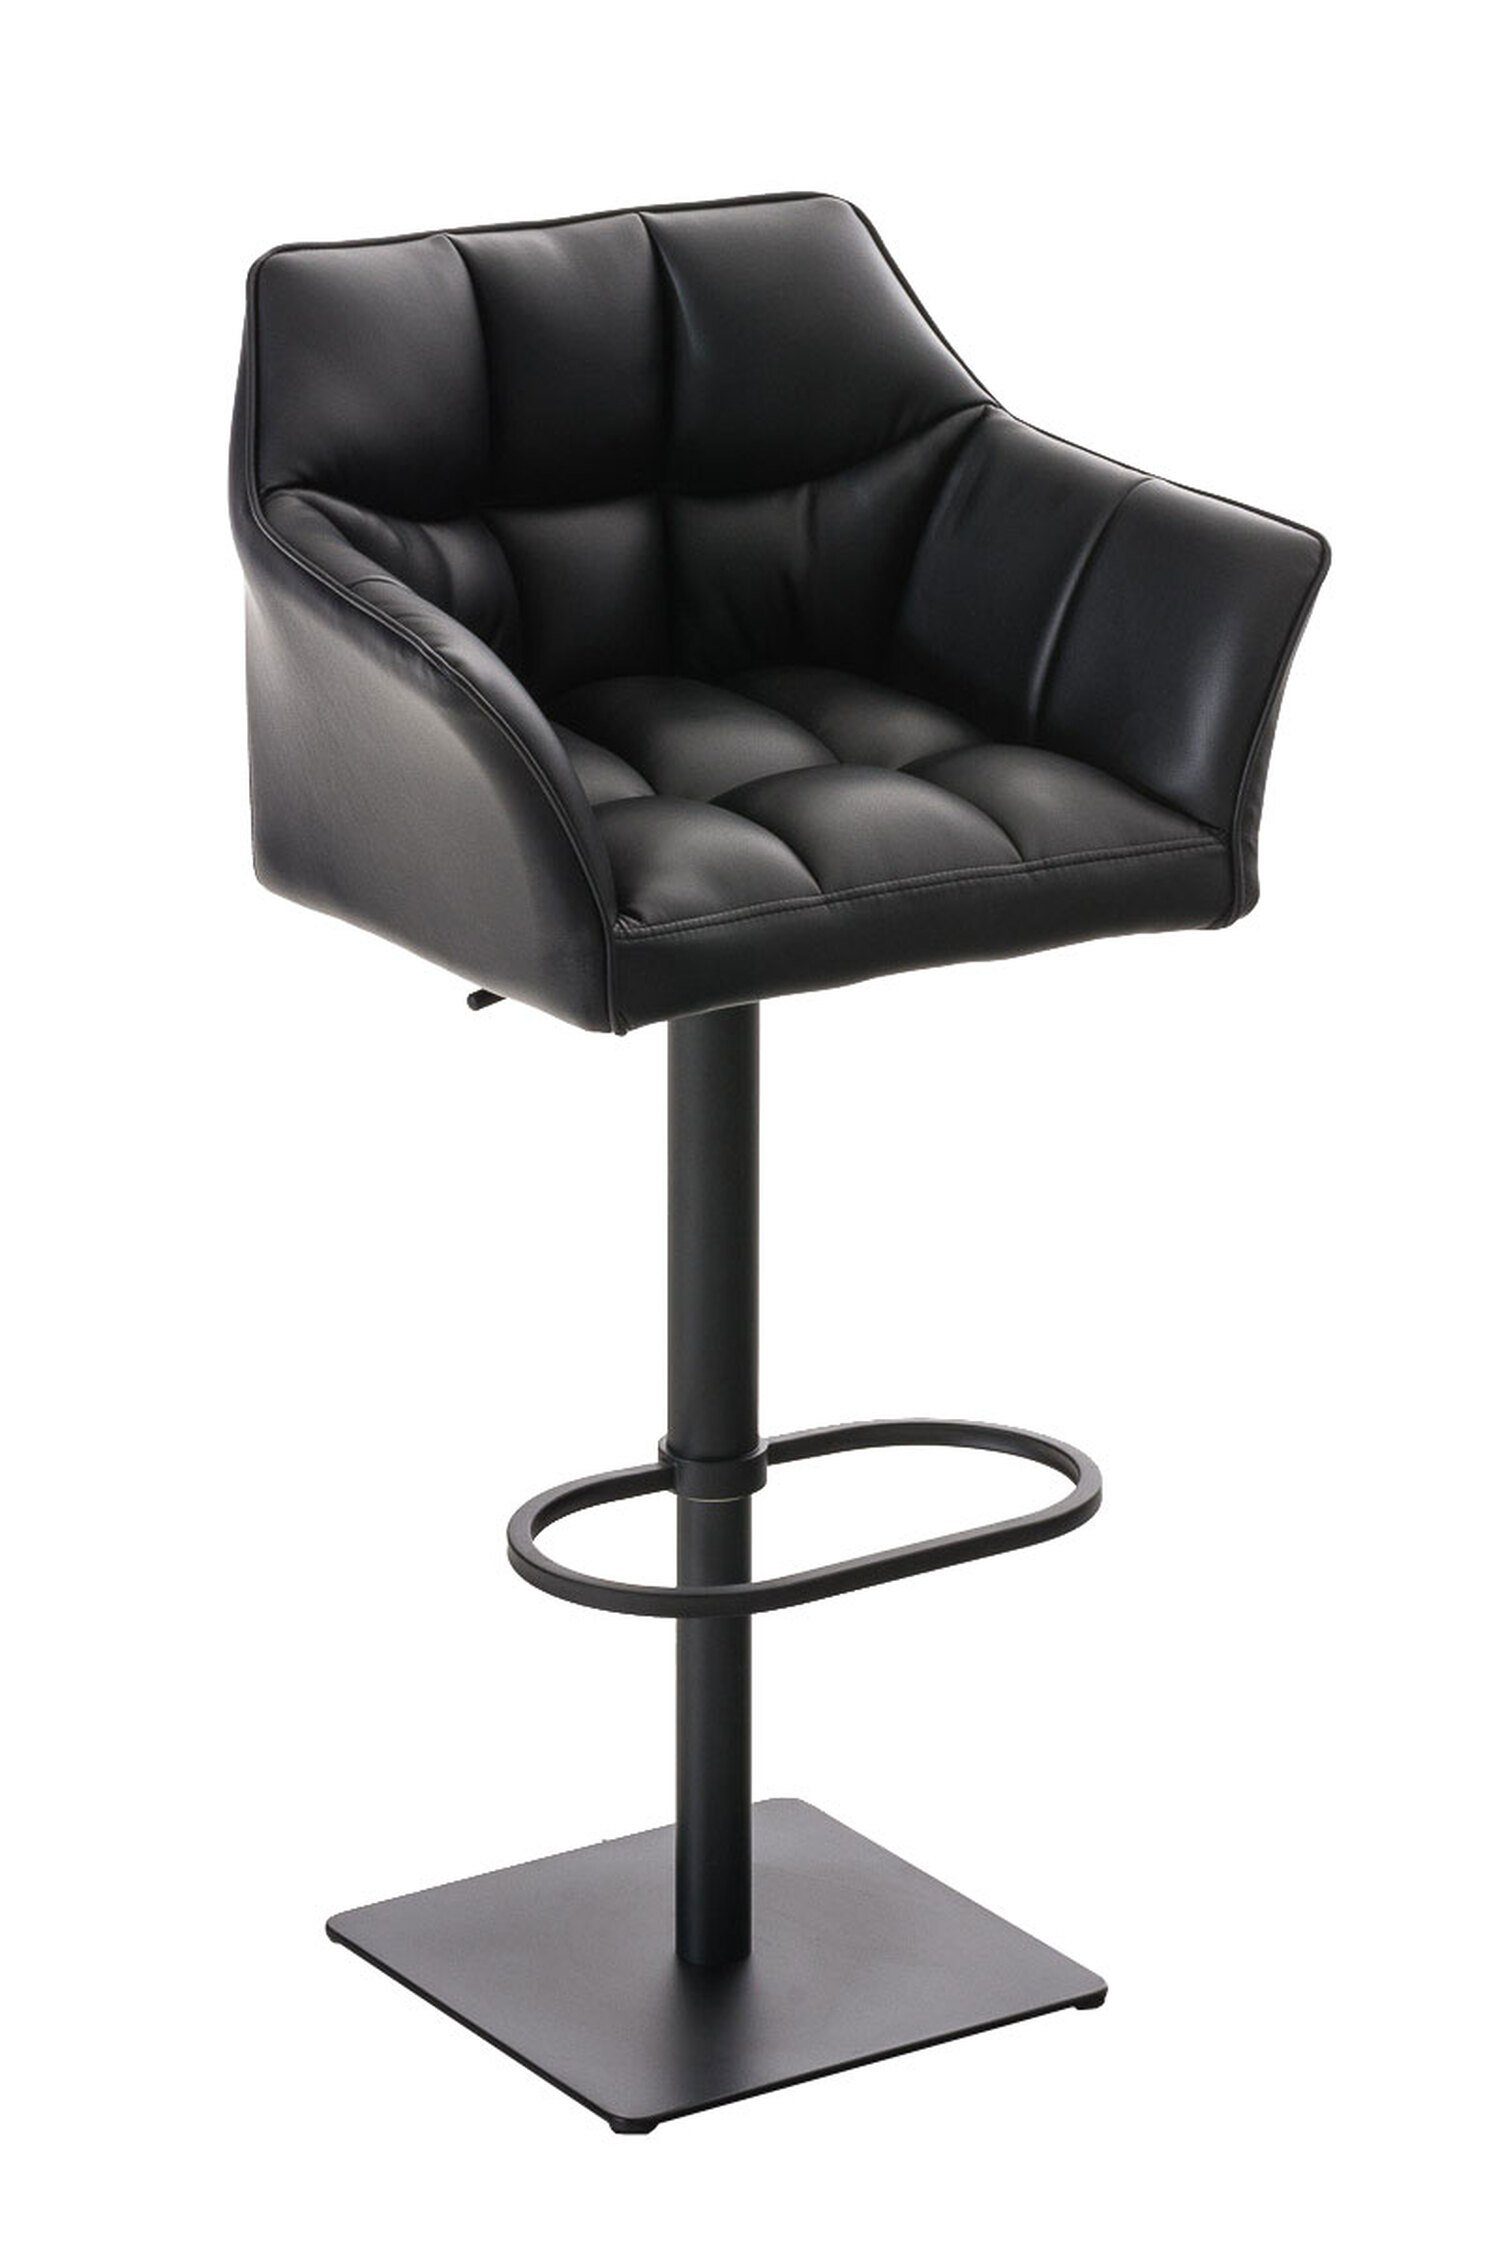 matt - - TPFLiving - Sitzfläche: Küche), & Schwarz Metall Fußstütze und für Damaso Kunstleder Theke Barhocker drehbar schwarz Hocker 360° (mit Rückenlehne